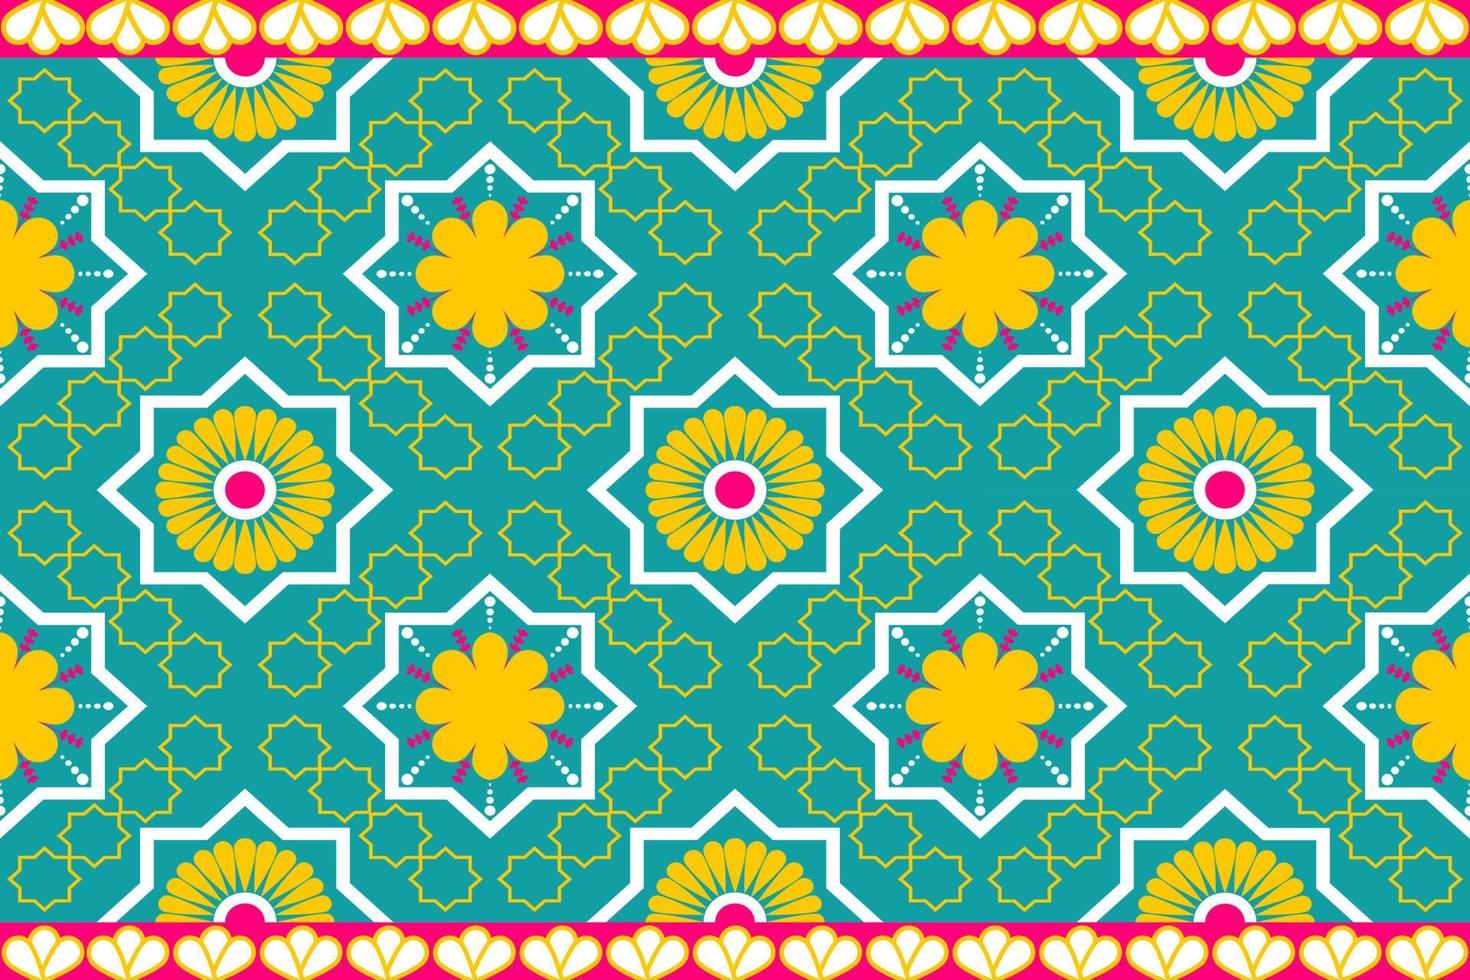 kleurrijke Marokko etnische motief naadloze patroon met natuur traditionele achtergrondontwerp voor tapijt, behang, kleding, inwikkeling, batik, stof, vector illustratie borduurstijl.